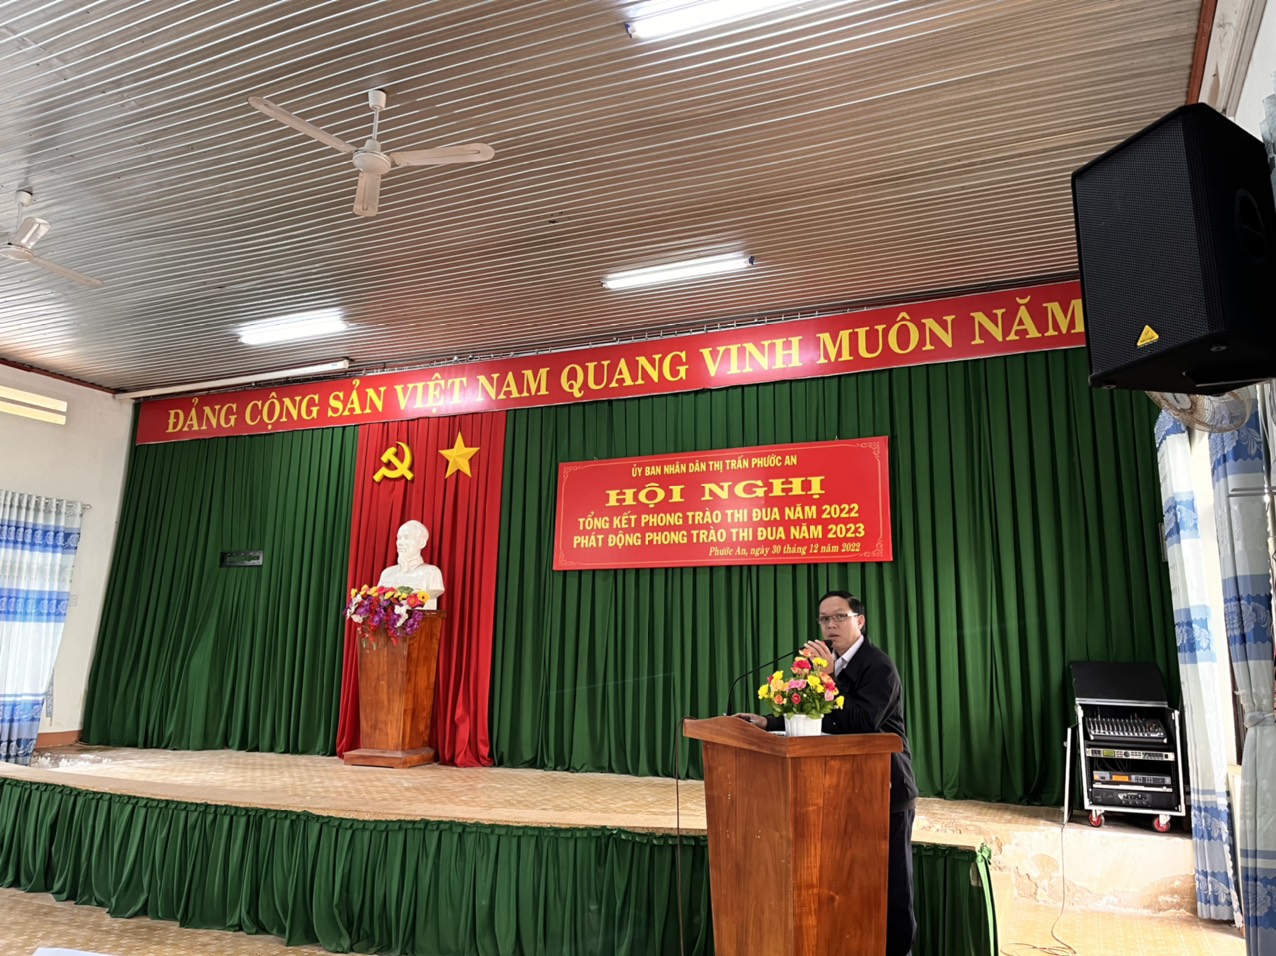 UBND thị trấn Phước An tổ chức Hội nghị tổng kết phong trào thi đua năm 2022, phát động phong trào thi đua năm 2023